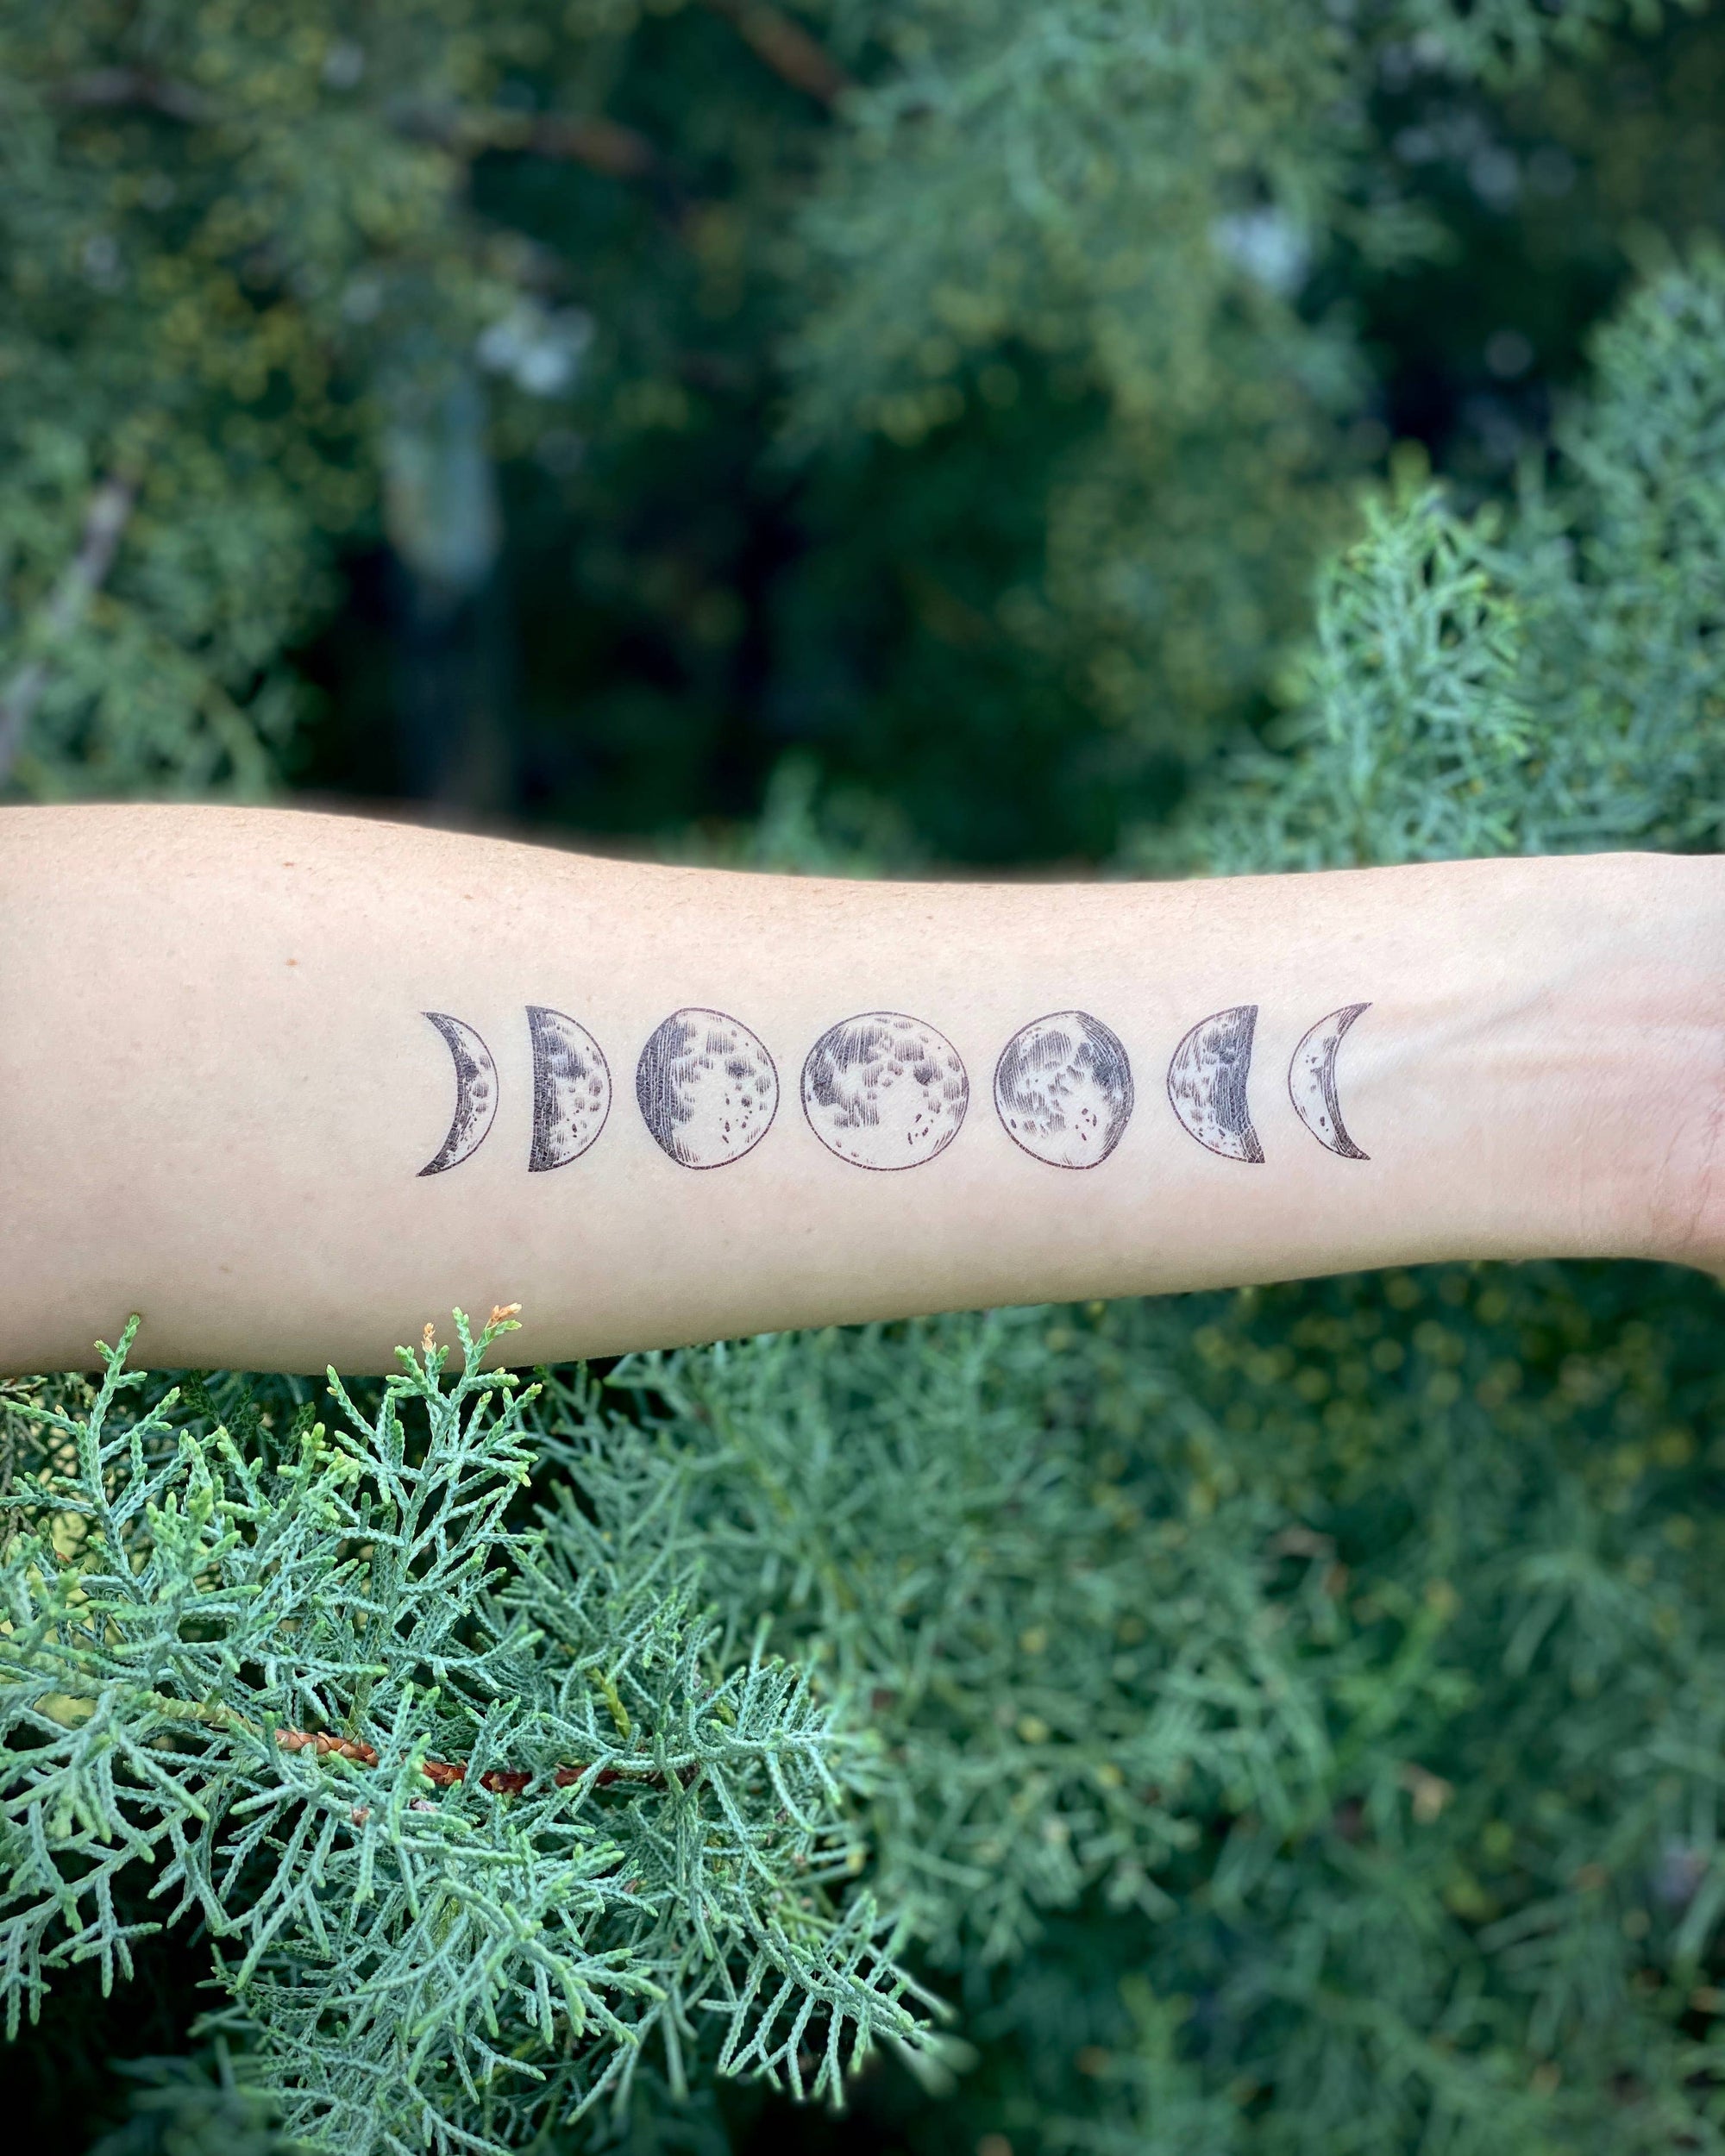 Moon Magic Temporary Tattoo